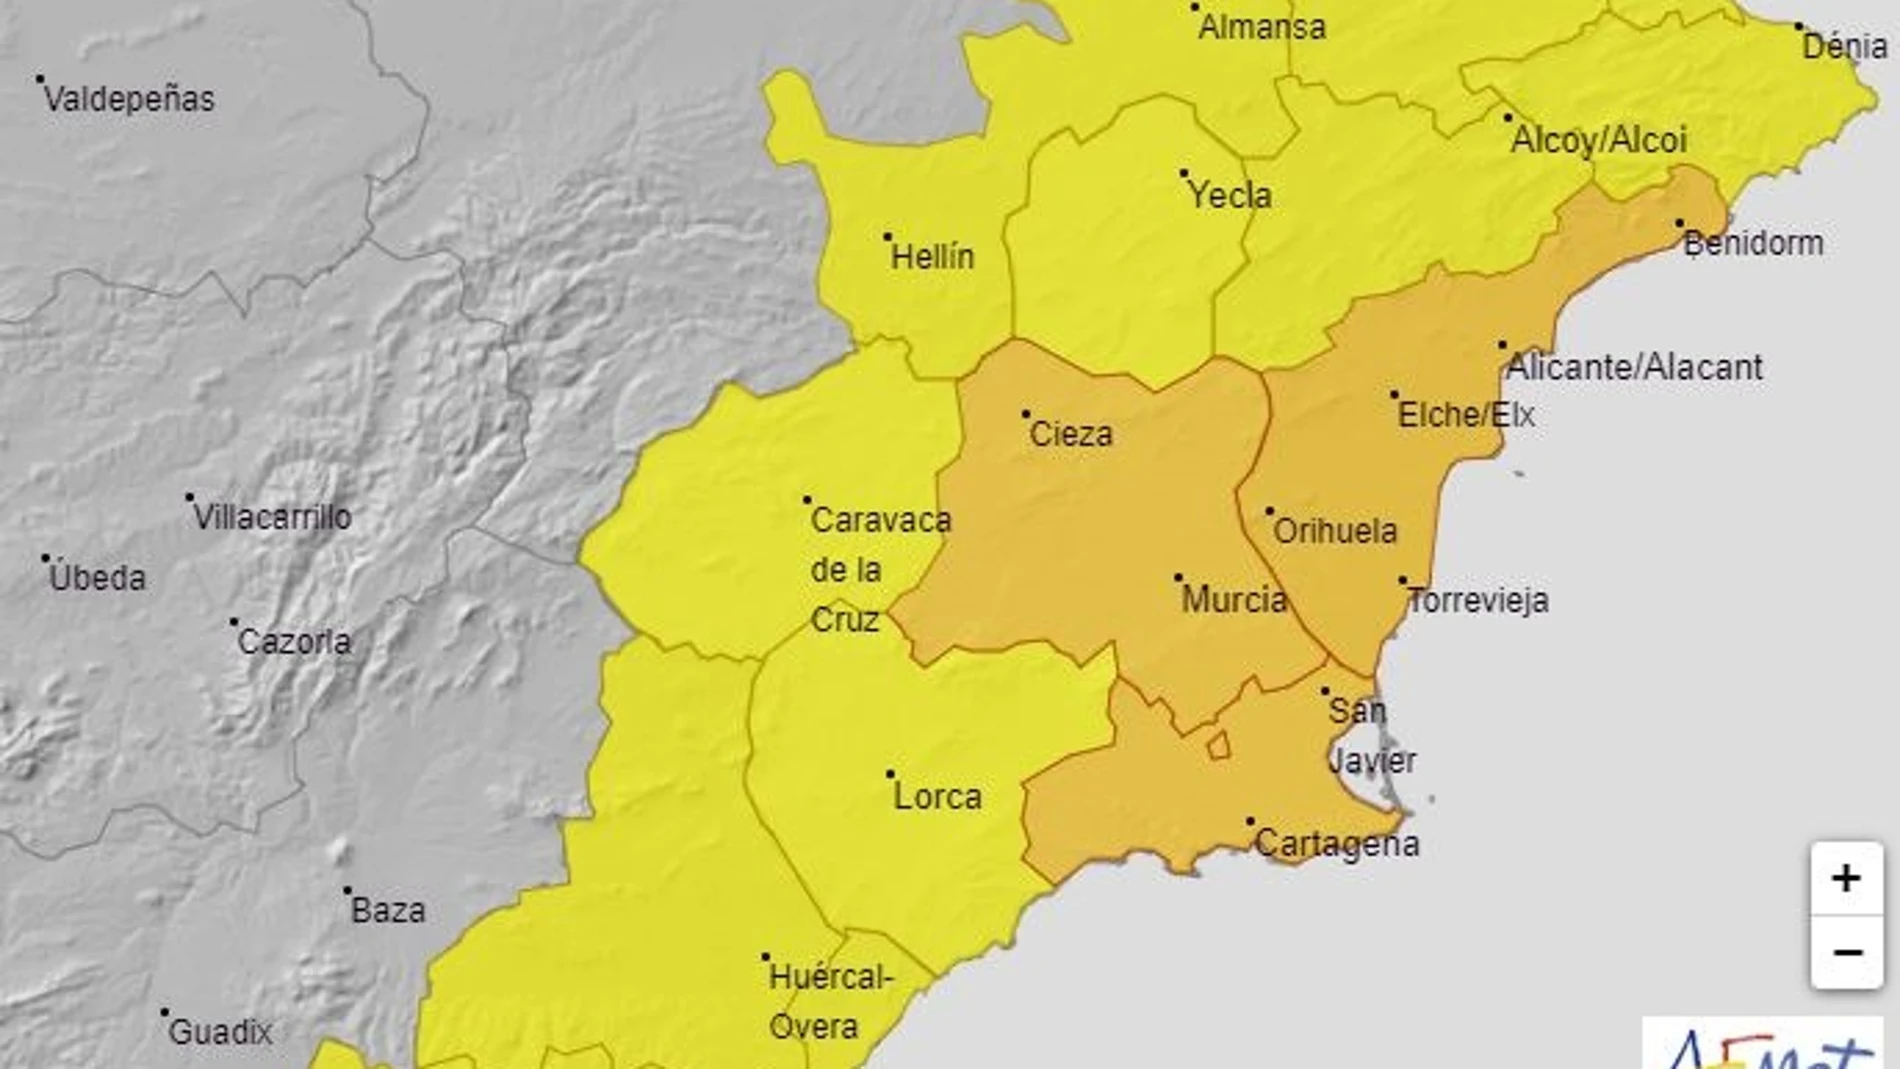 La Aemet mantiene la alerta naranja por tormentas este lunes en la Vega del Segura, Campo de Cartagena y Mazarrón